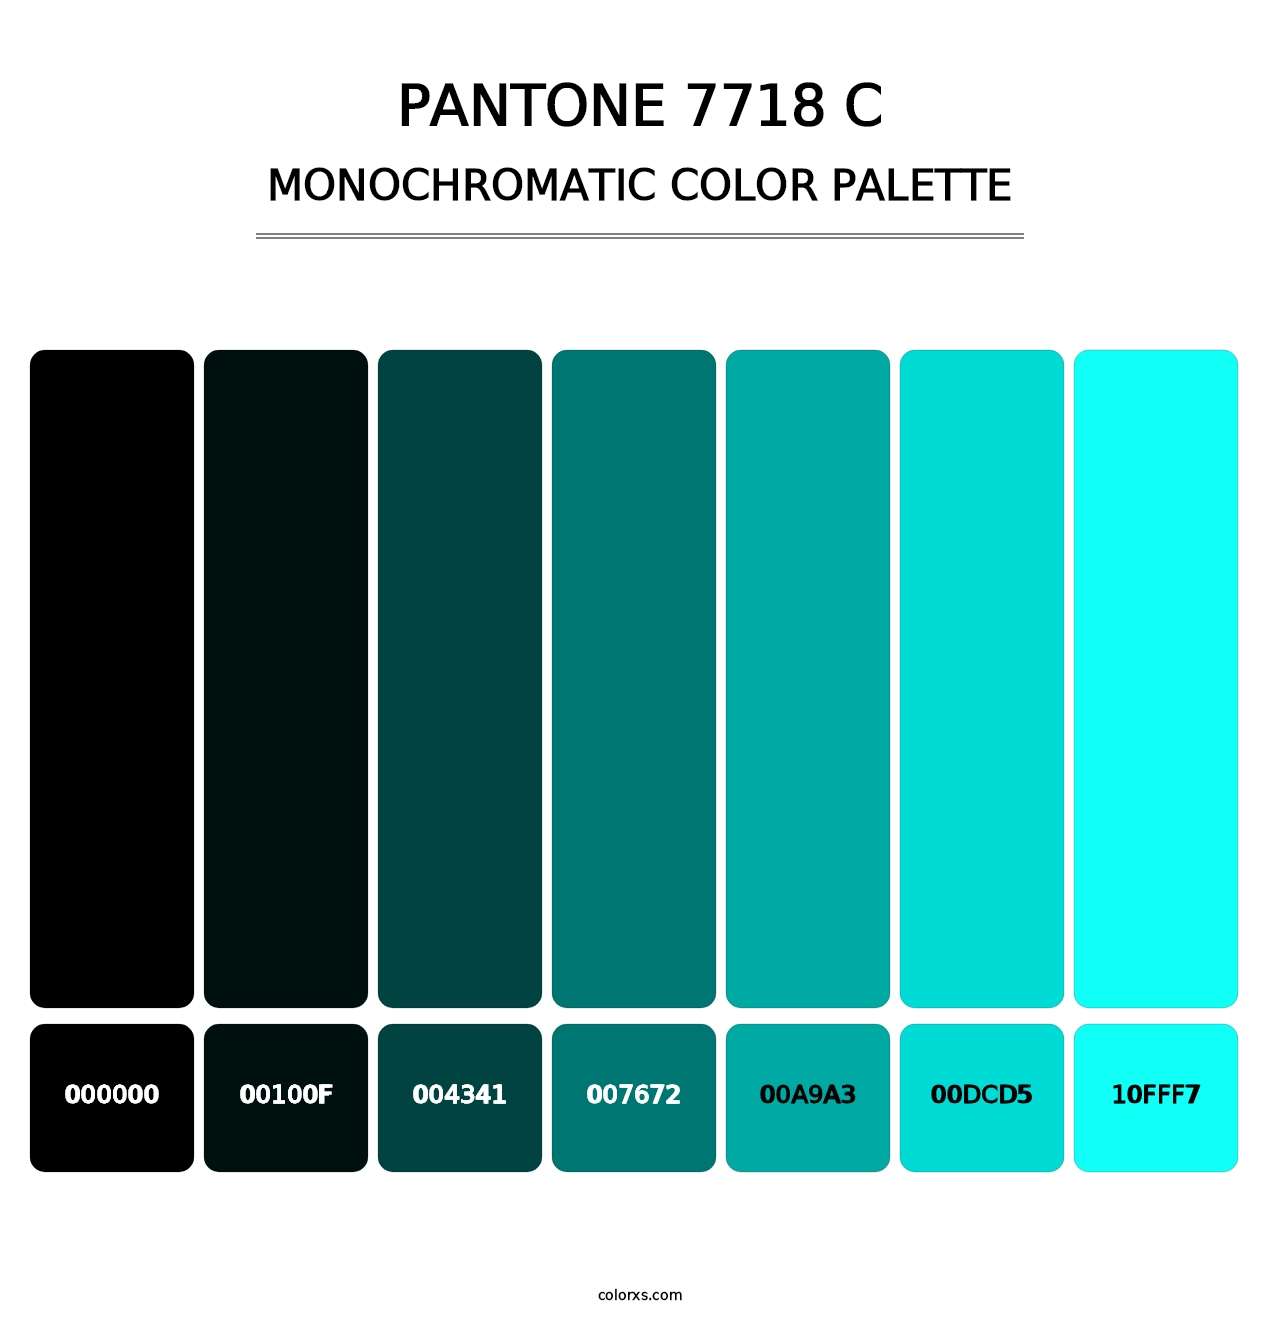 PANTONE 7718 C - Monochromatic Color Palette